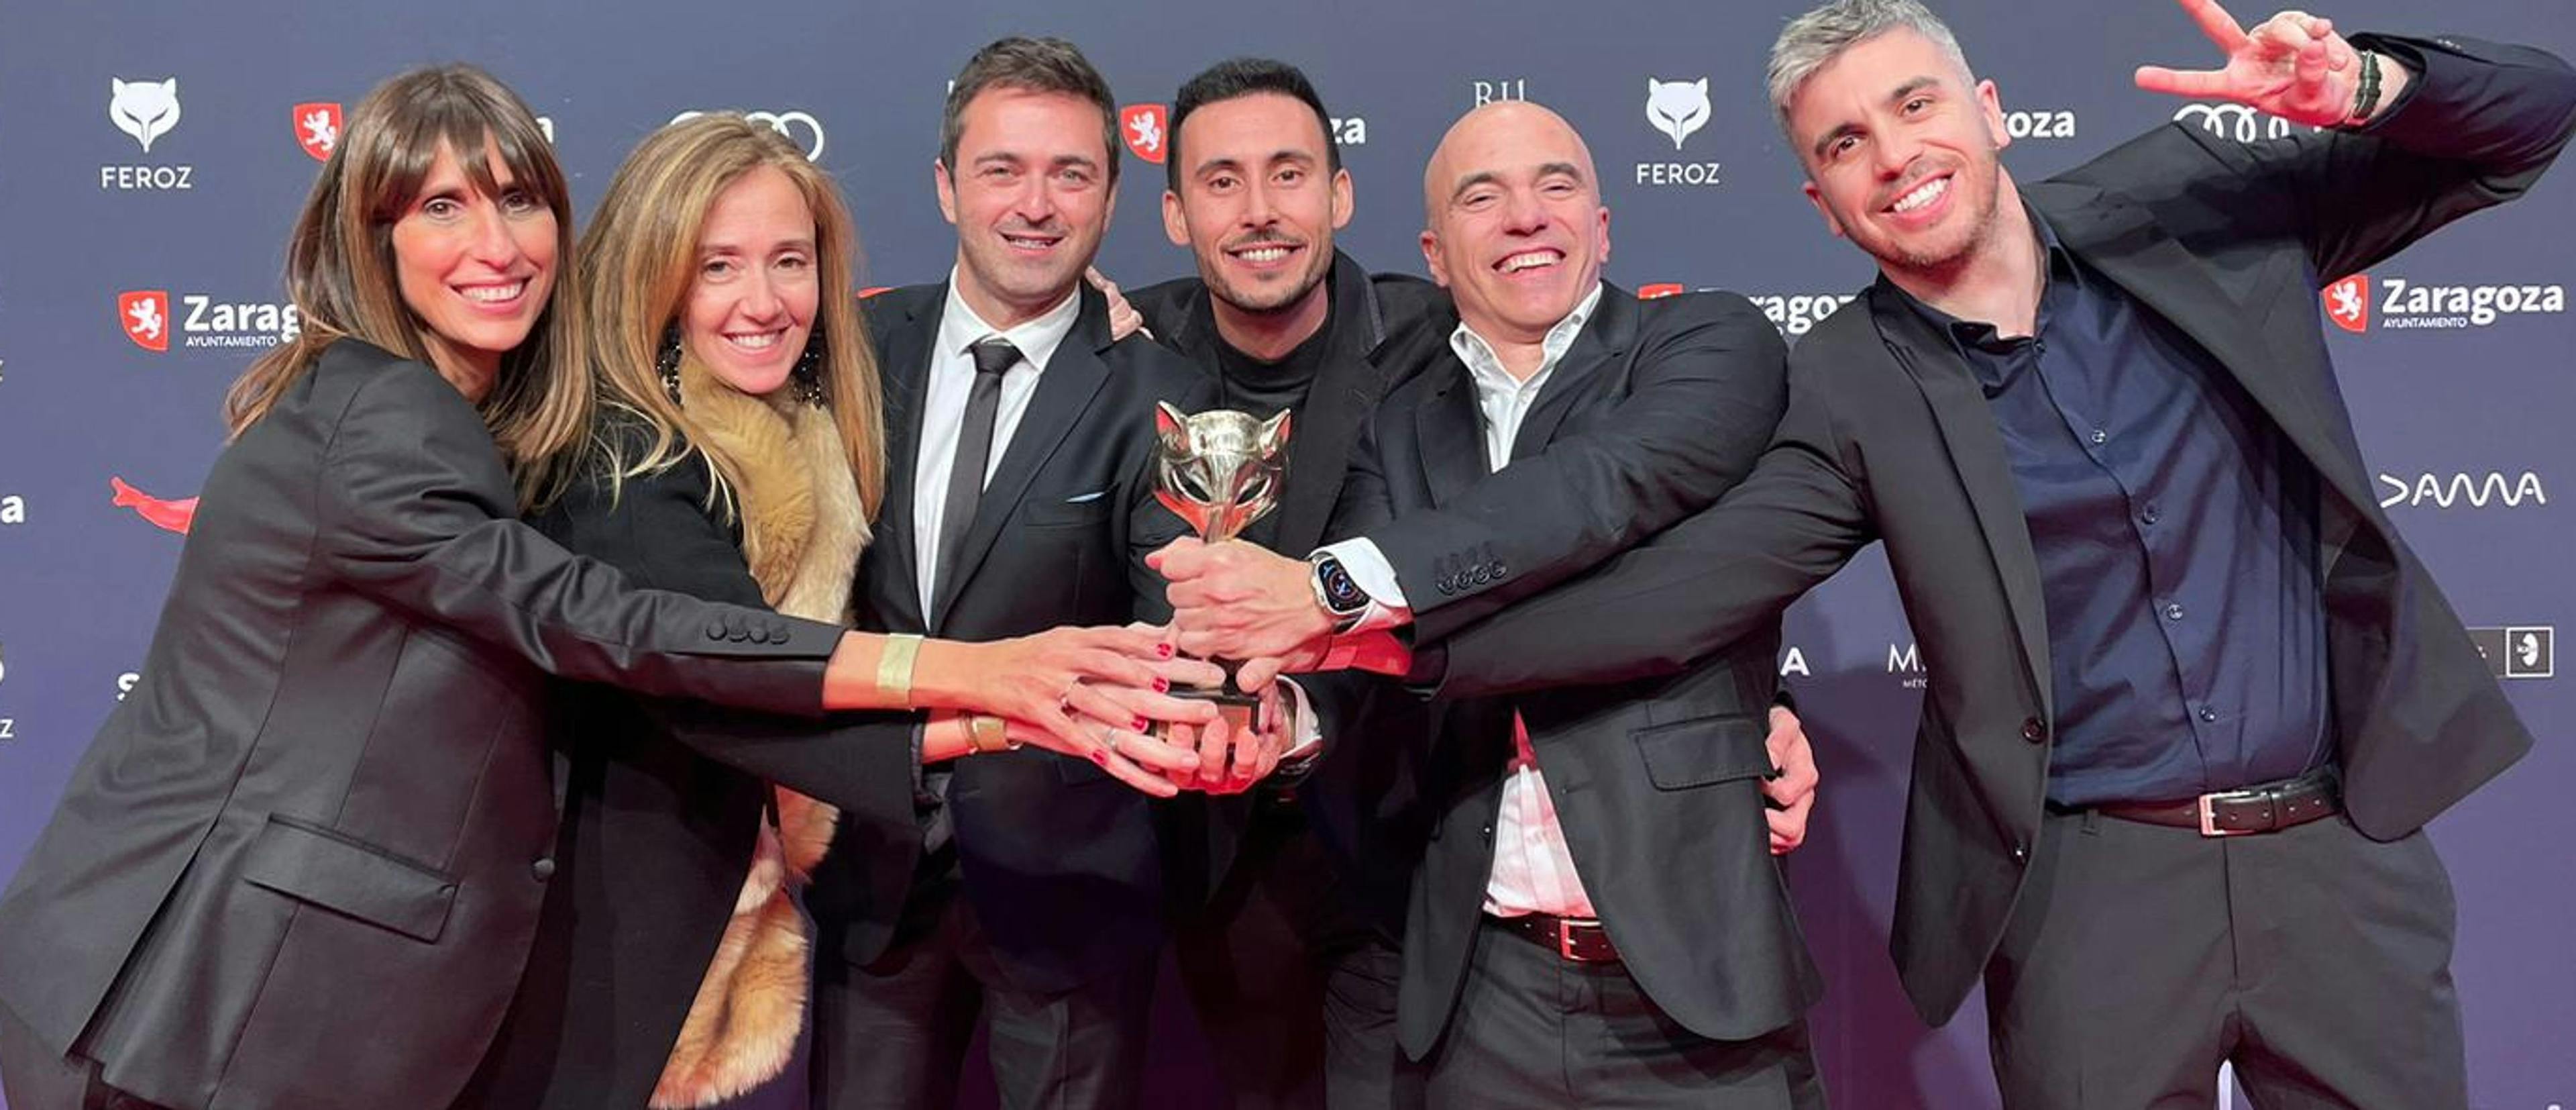 El responsable de Plataformas de Atresmedia TV, Emilio Sánchez Zaballos (tercero por la izquierda), celebra con el equipo los Feroz de 'La Ruta'